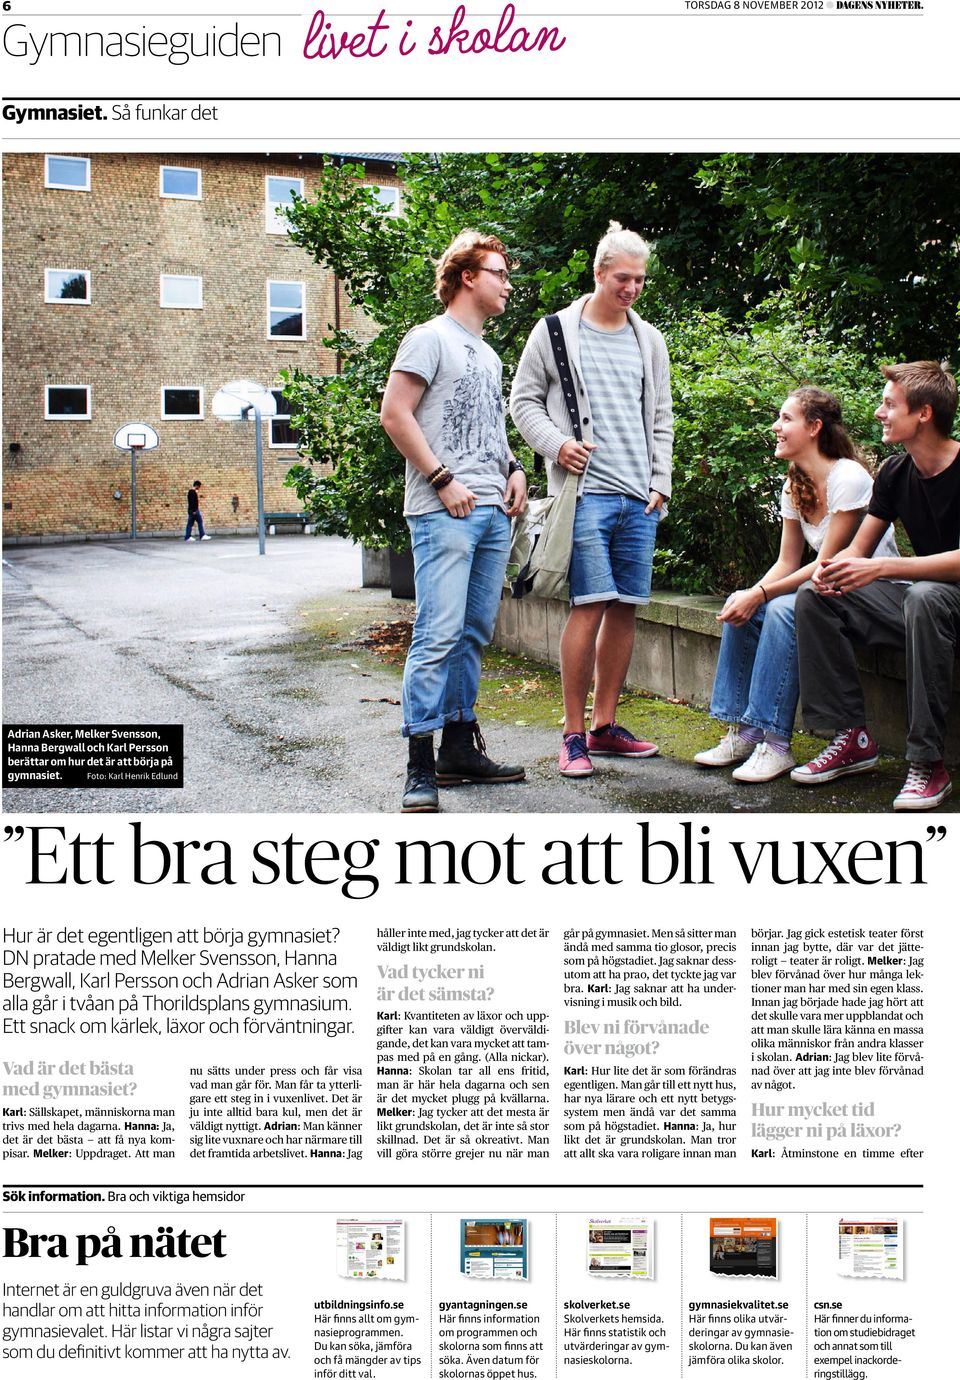 DN pratade med Melker Svensson, Hanna Bergwall, Karl Persson och Adrian Asker som alla går i tvåan på Thorildsplans gymnasium. Ett snack om kärlek, läxor och förväntningar.